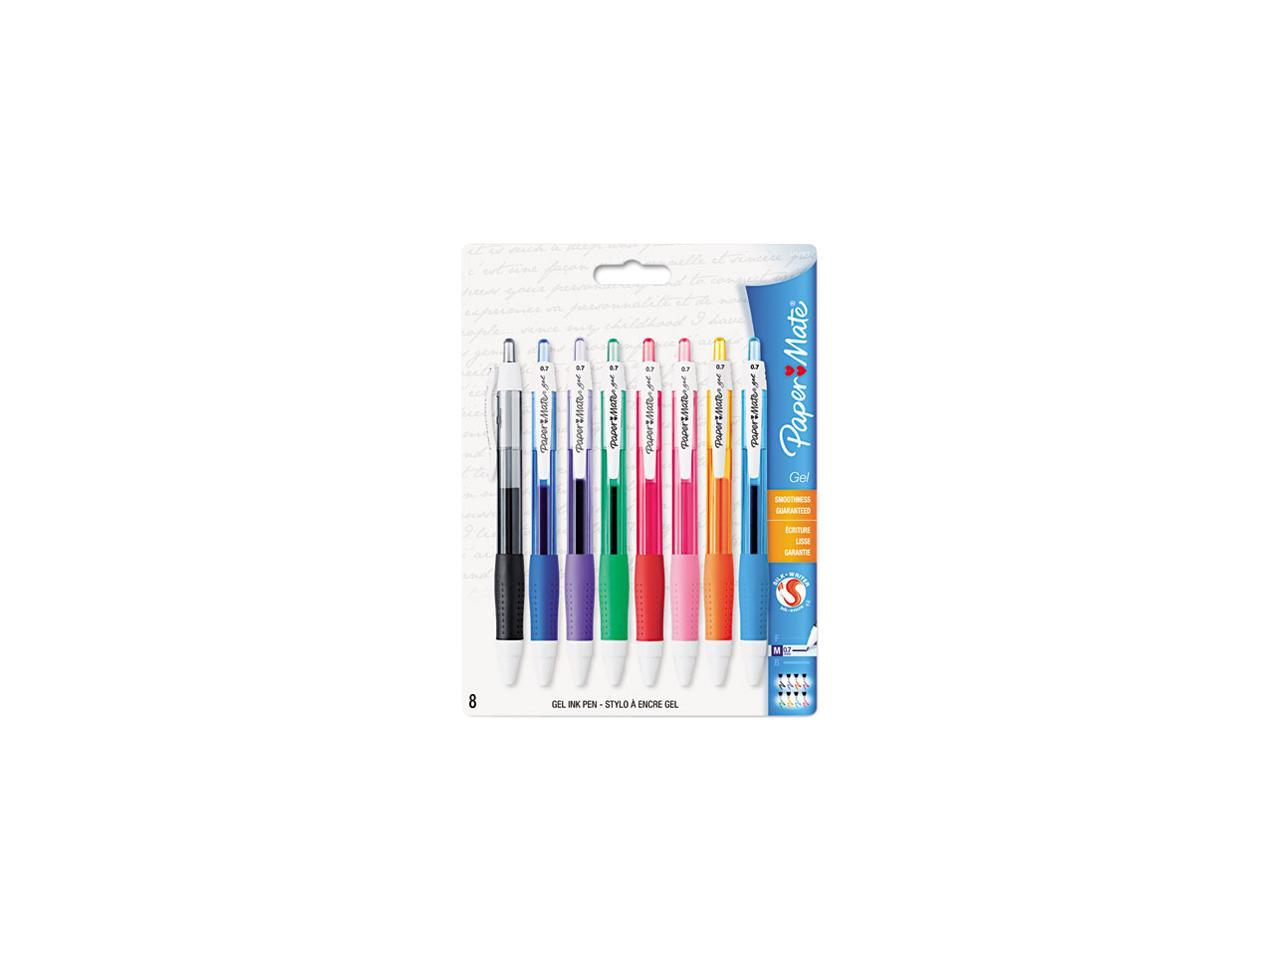 Paper Mate Roller Ball Stick Gel Pen Assorted Ink Medium 8/Pack 1746323 